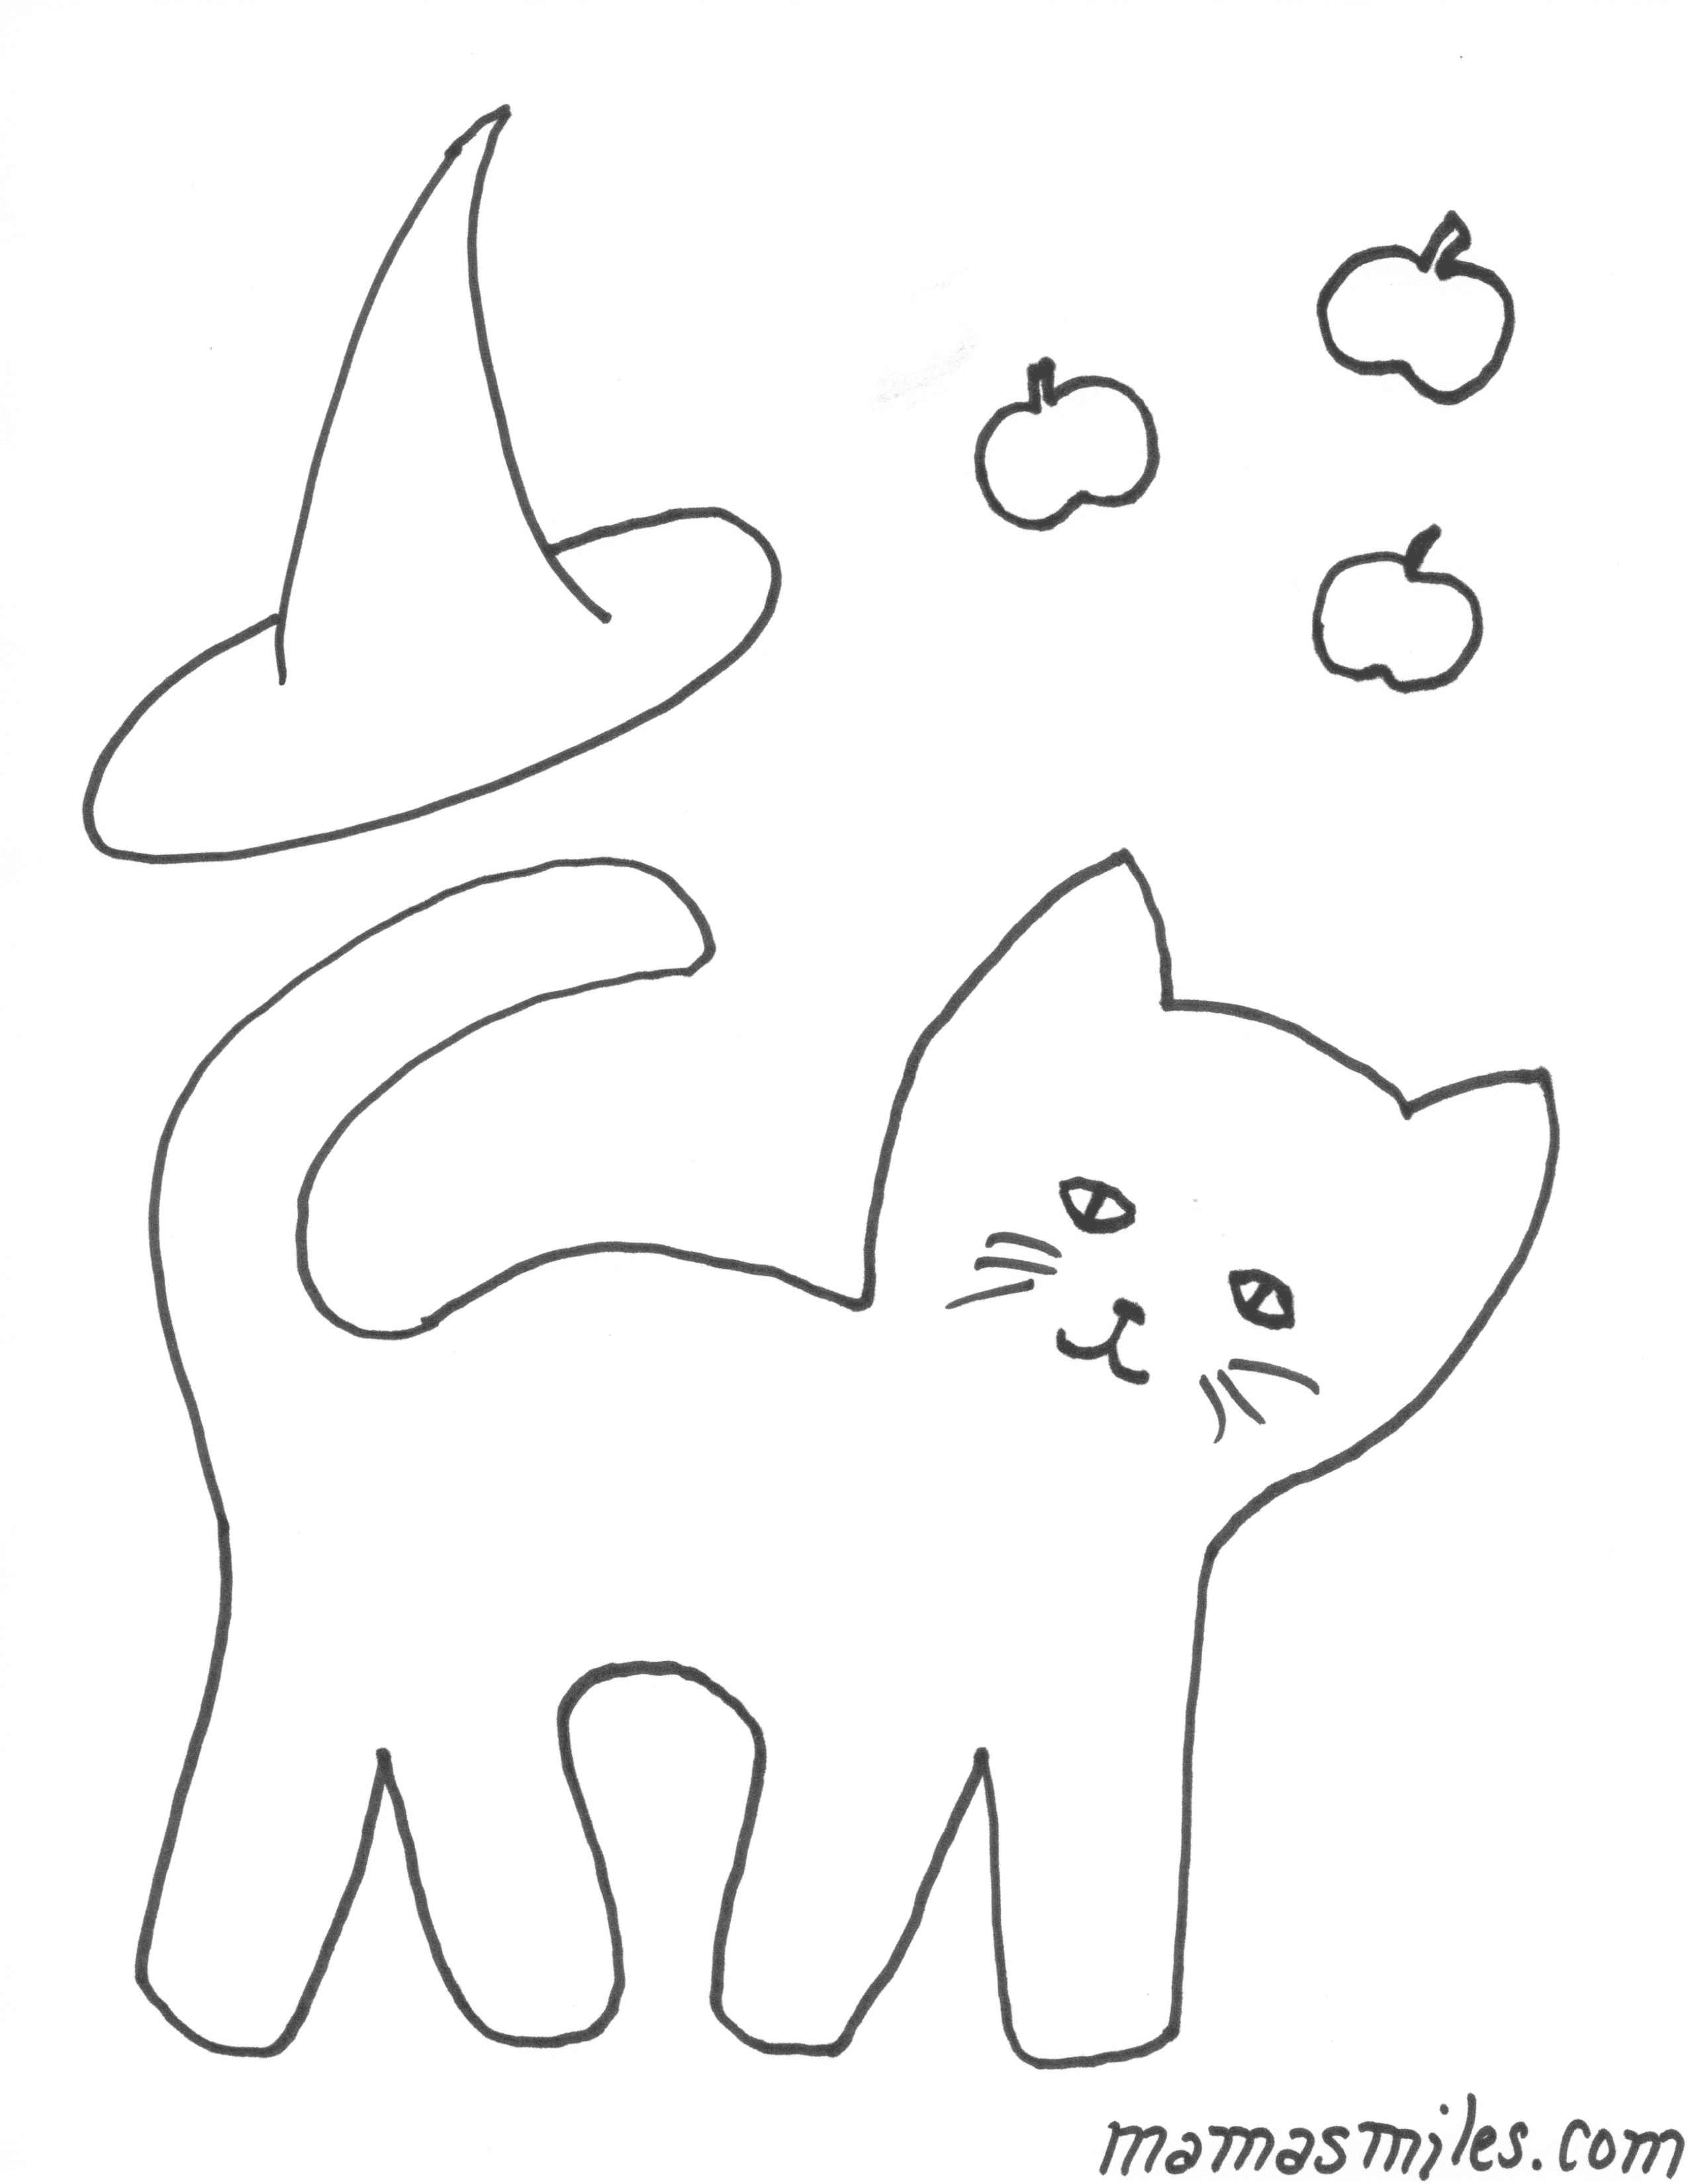 Шаблон котенка для рисования - 81 фото